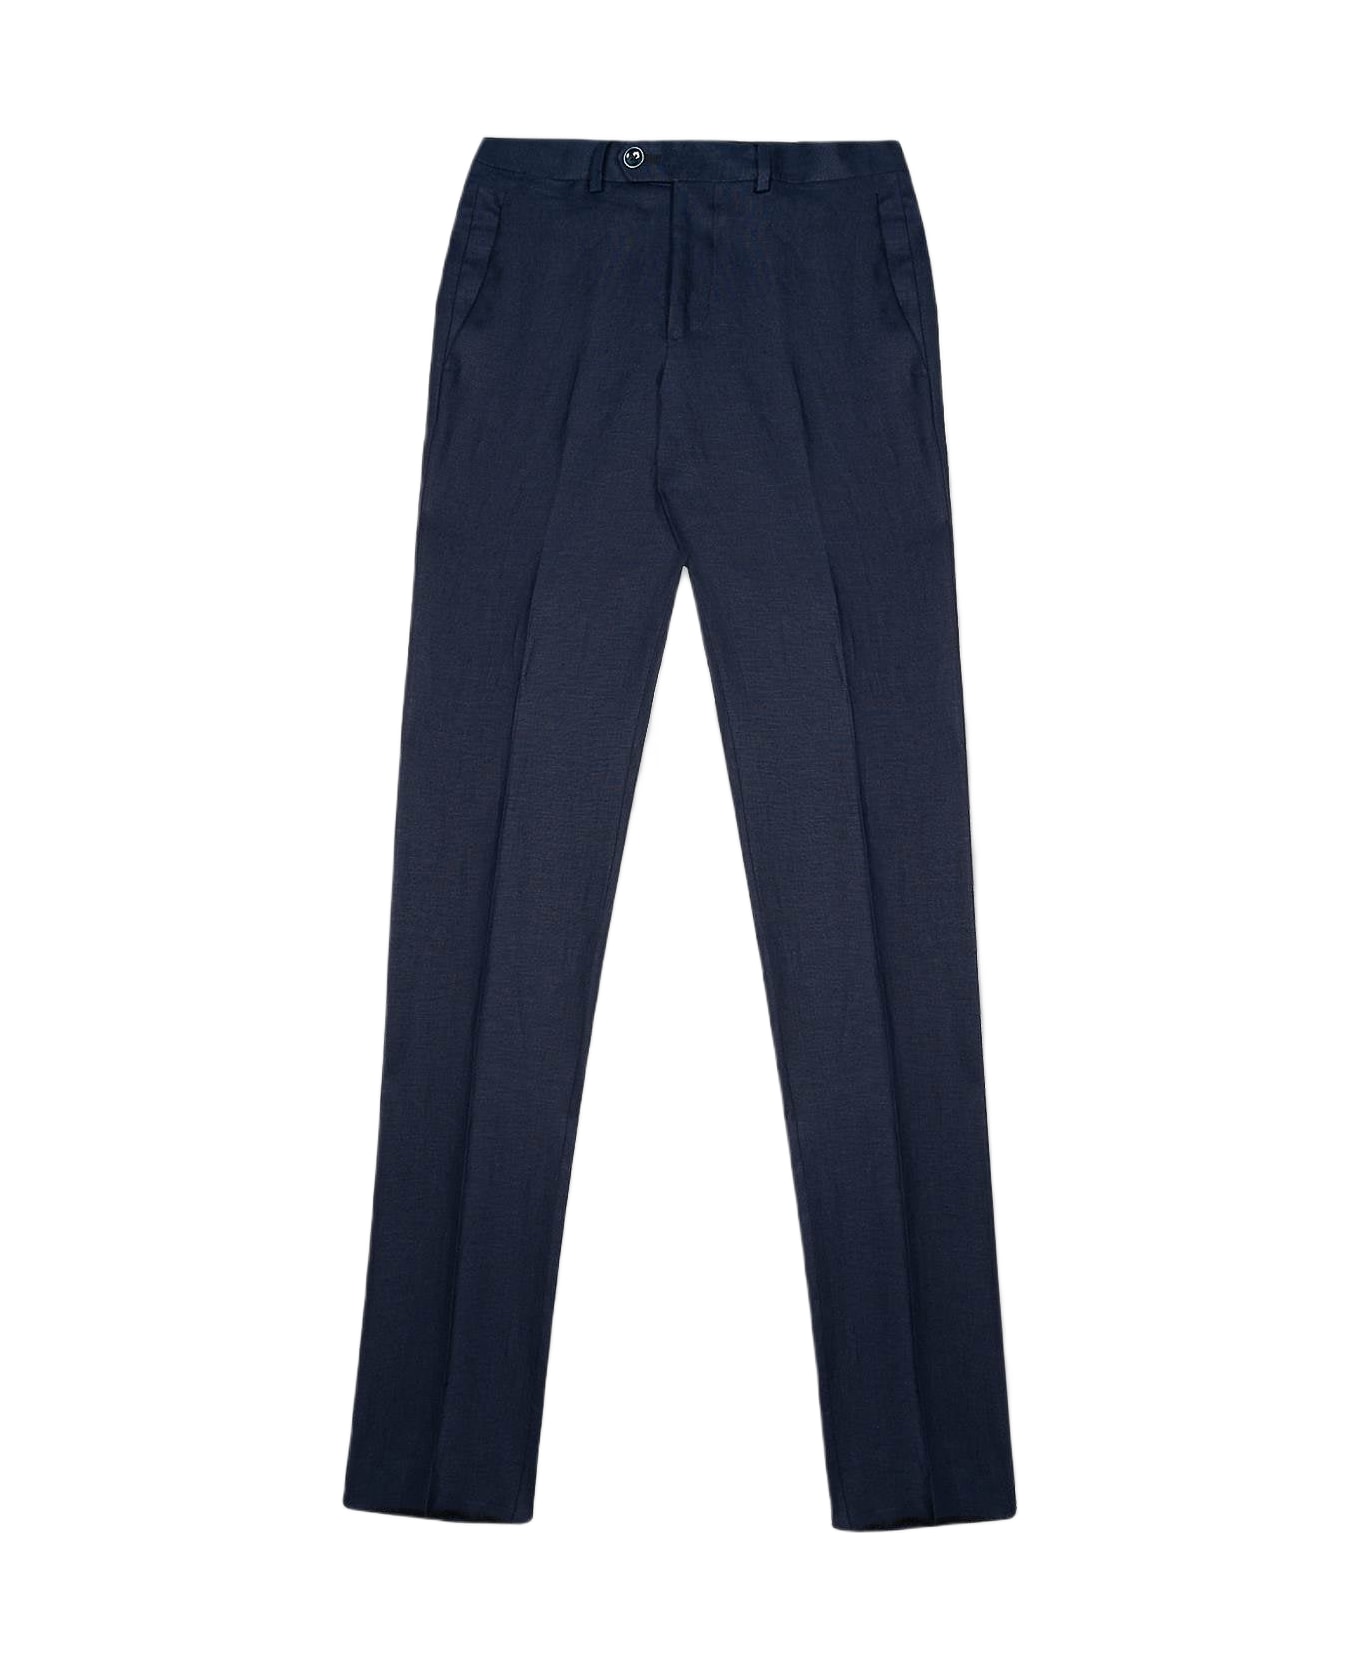 Larusmiani Velvet Trousers Howard Pants - Navy